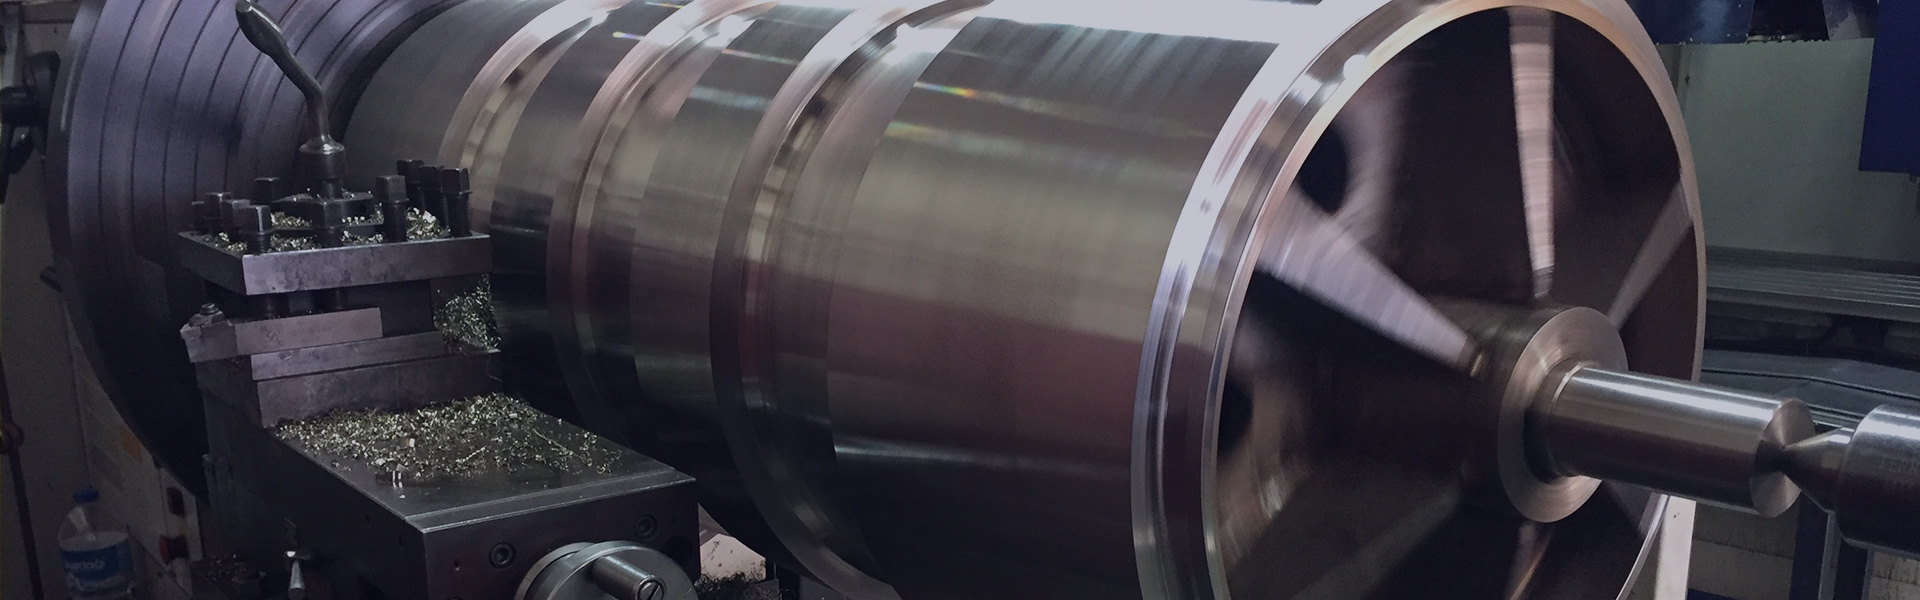 Roller Manufacturing | Asyamak Metal Engineering